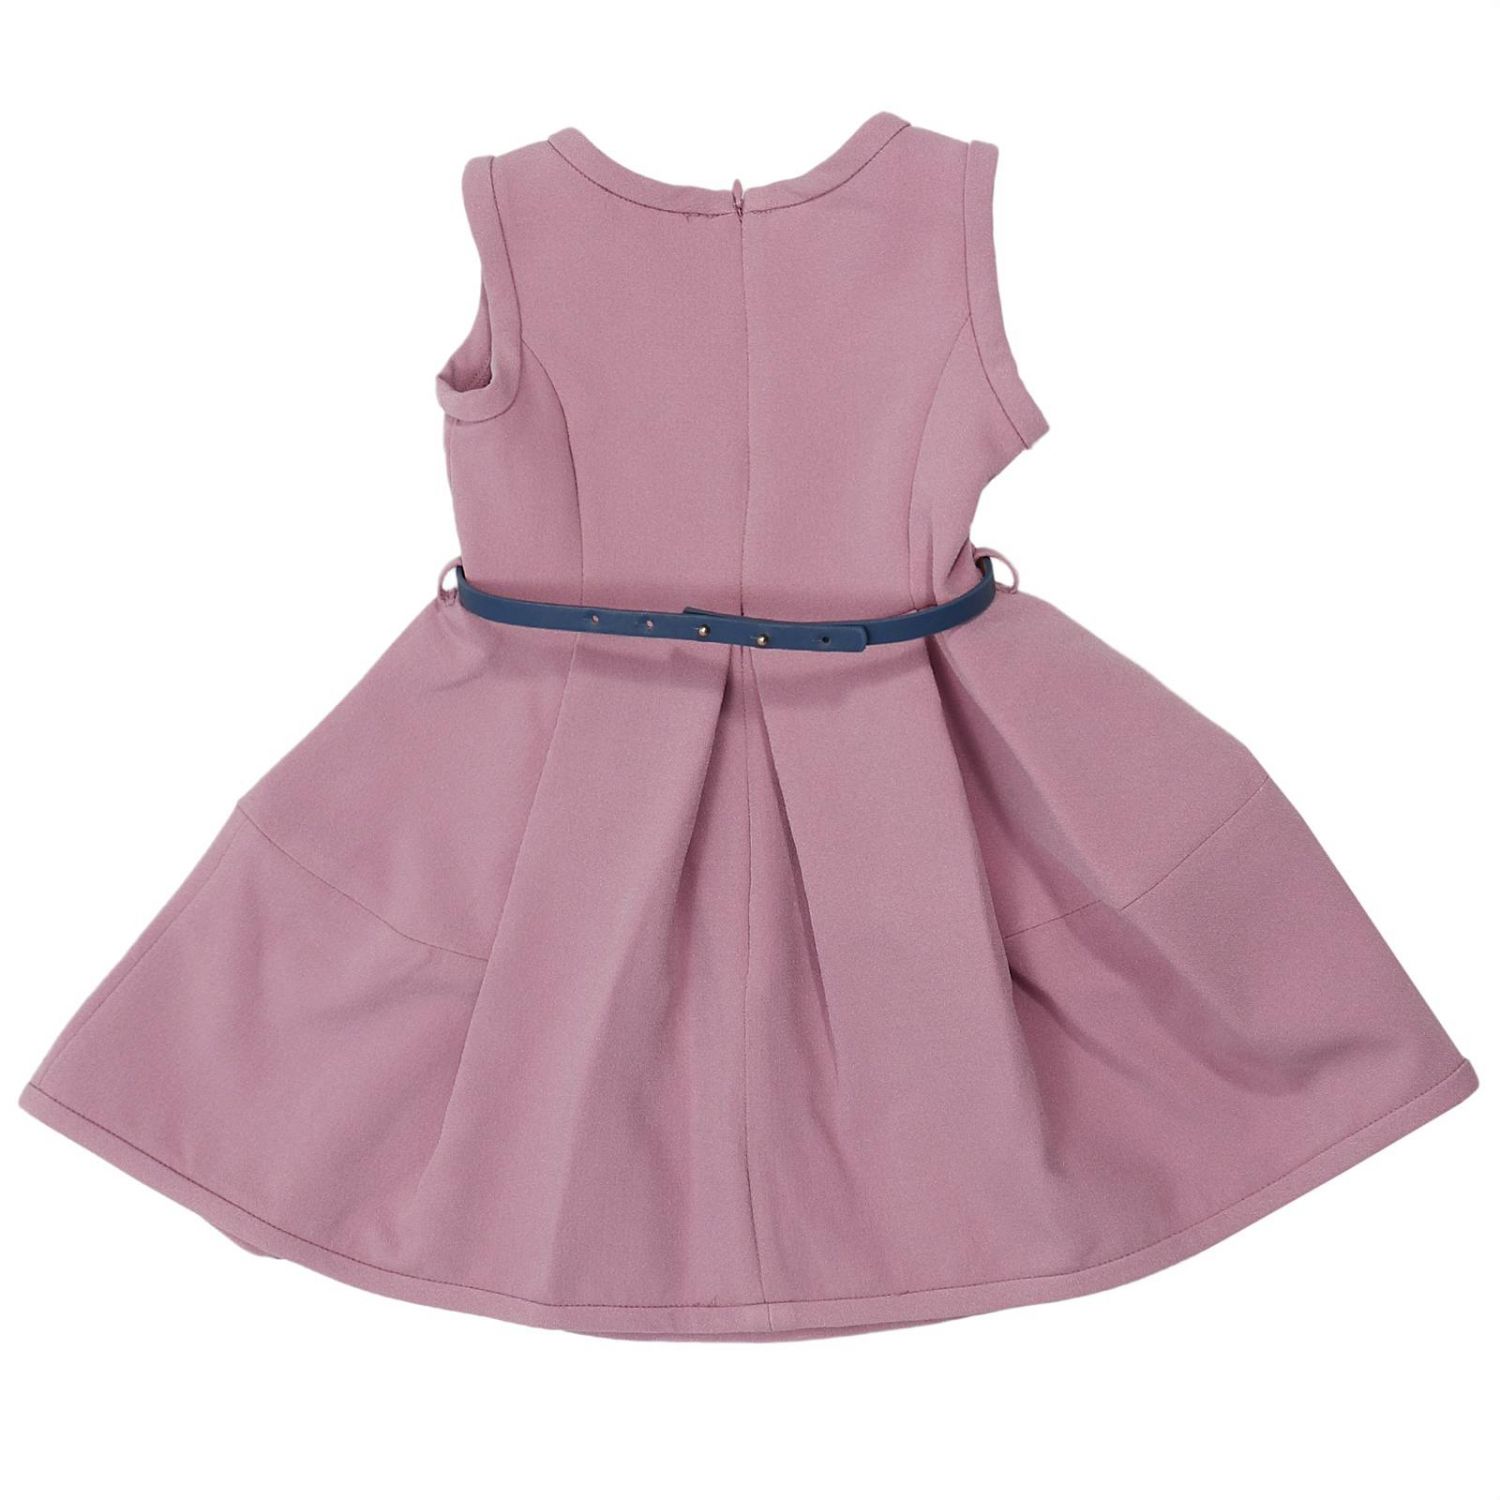 Dress kids Monnalisa | Dress Monnalisa Kids Pink | Dress Monnalisa ...